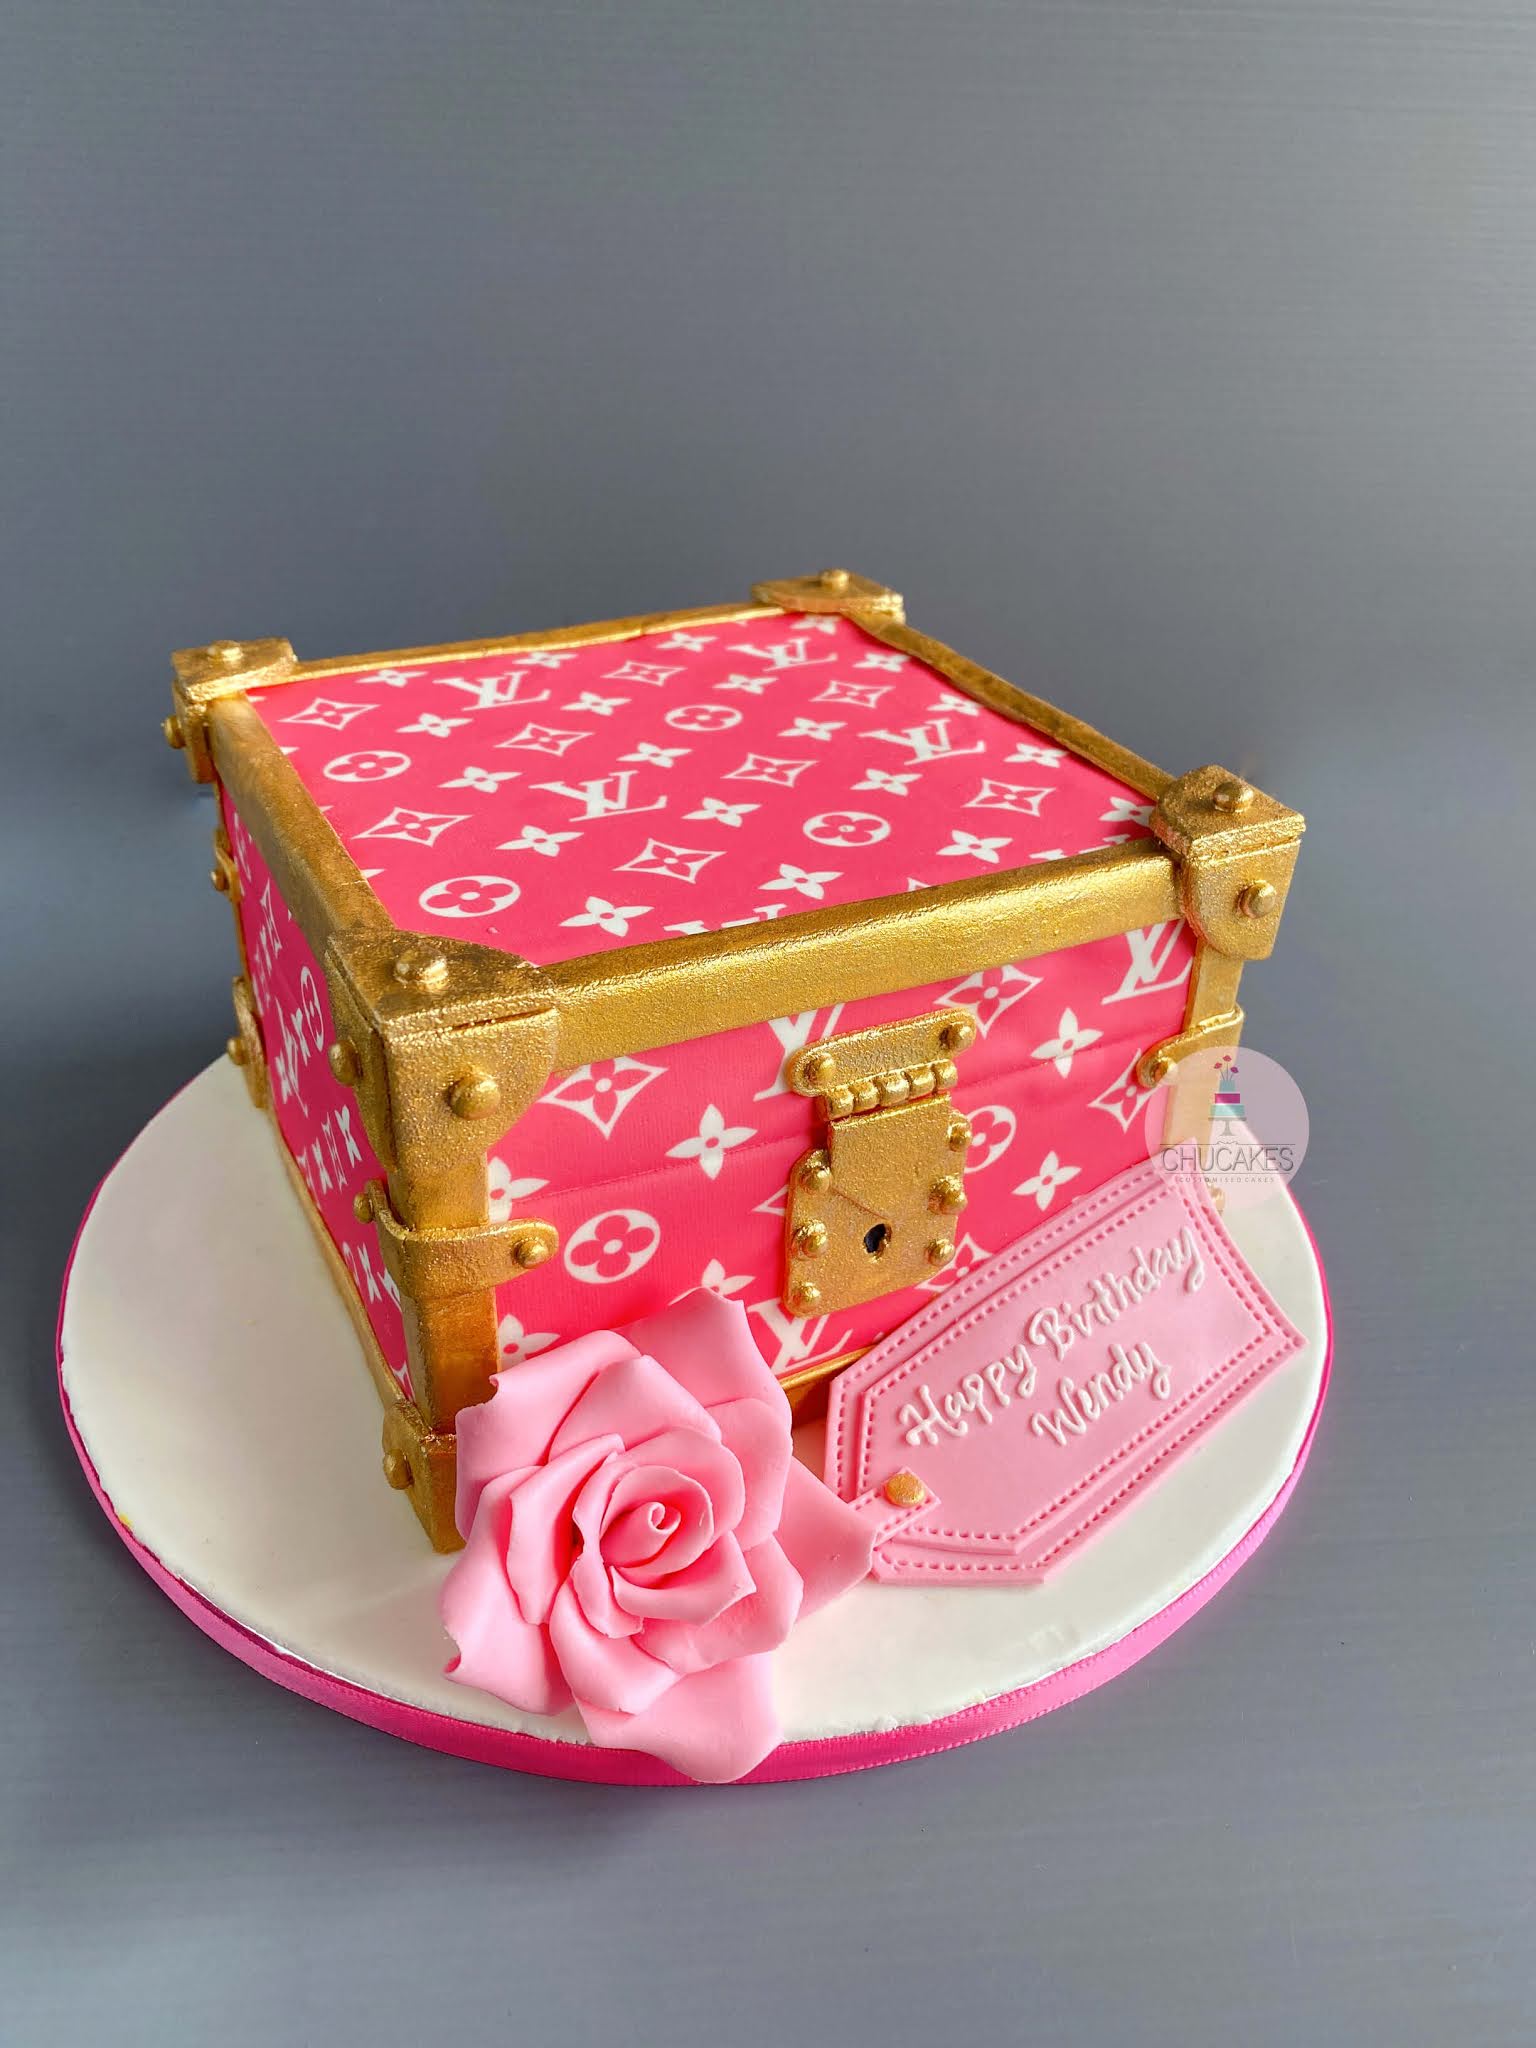 Chucakes della torta a scatola rosa